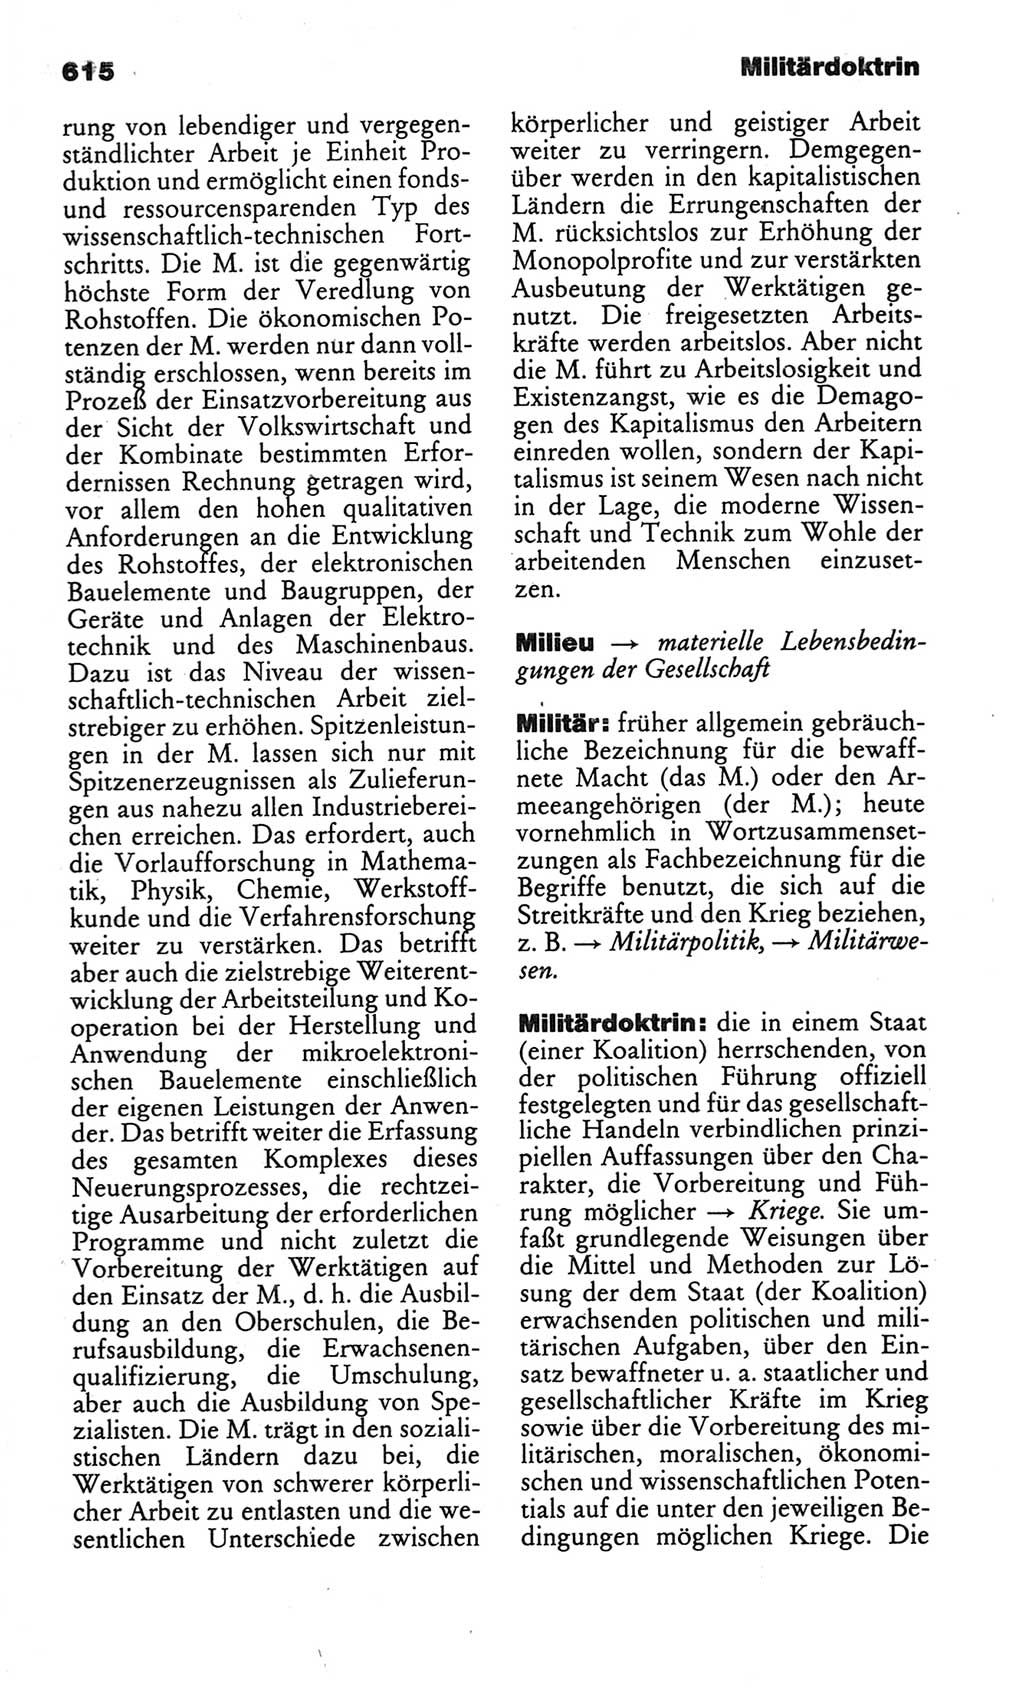 Kleines politisches Wörterbuch [Deutsche Demokratische Republik (DDR)] 1986, Seite 615 (Kl. pol. Wb. DDR 1986, S. 615)